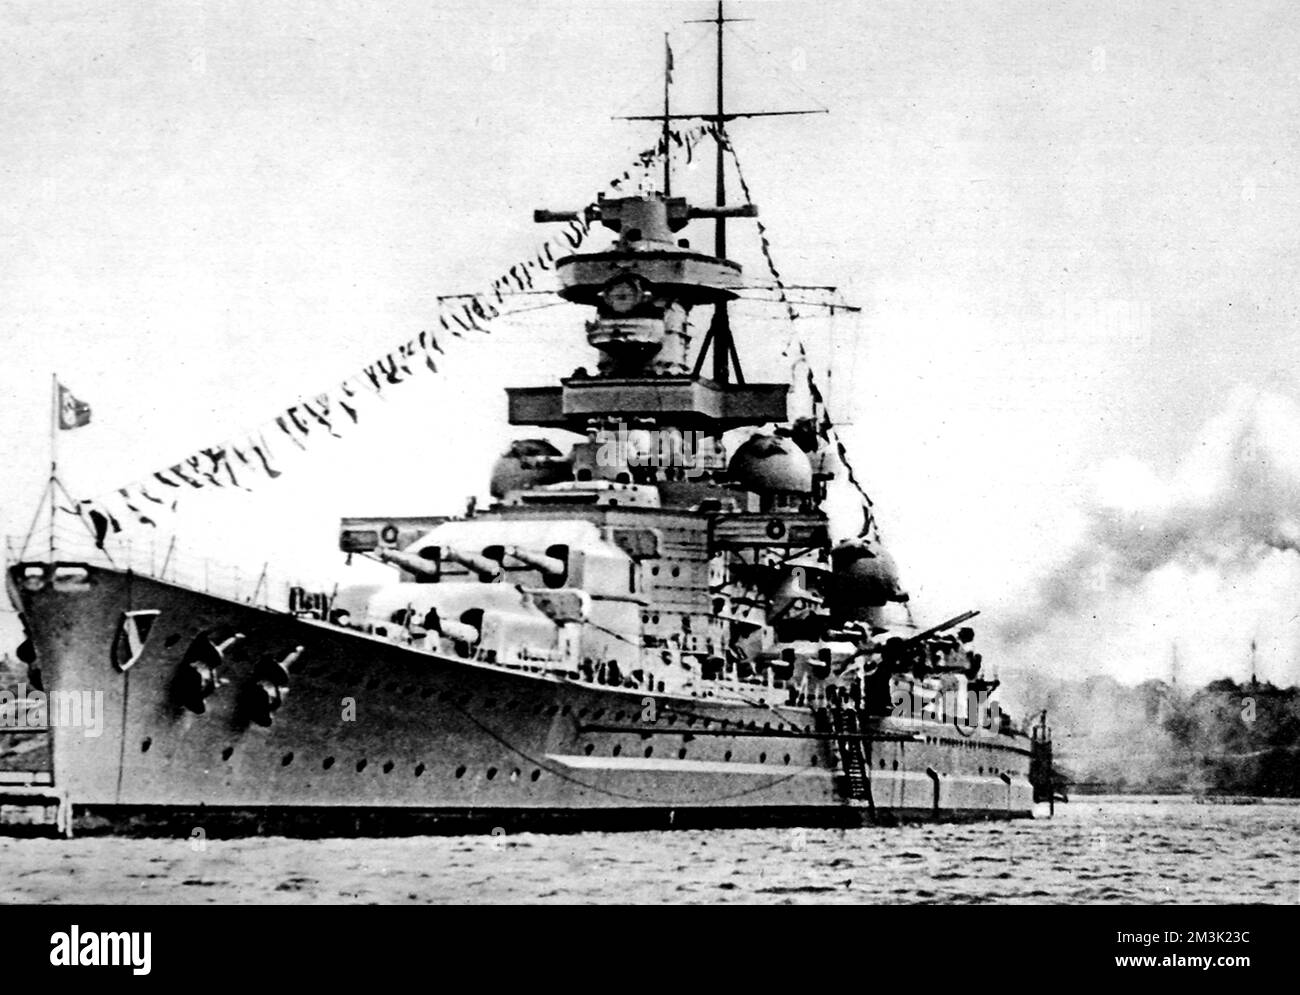 Das deutsche Schlachtschiff Scharnhorst, das anlässlich des Geburtstages von Adolf Hitler in einem unbekannten deutschen Hafen im Zweiten Weltkrieg salutiert. Die "Scharnhorst" wurde am 26.. Dezember 1943 bei der Schlacht am Nordkap von Royal Navy-Schiffen versenkt. Datum: 1943 Stockfoto